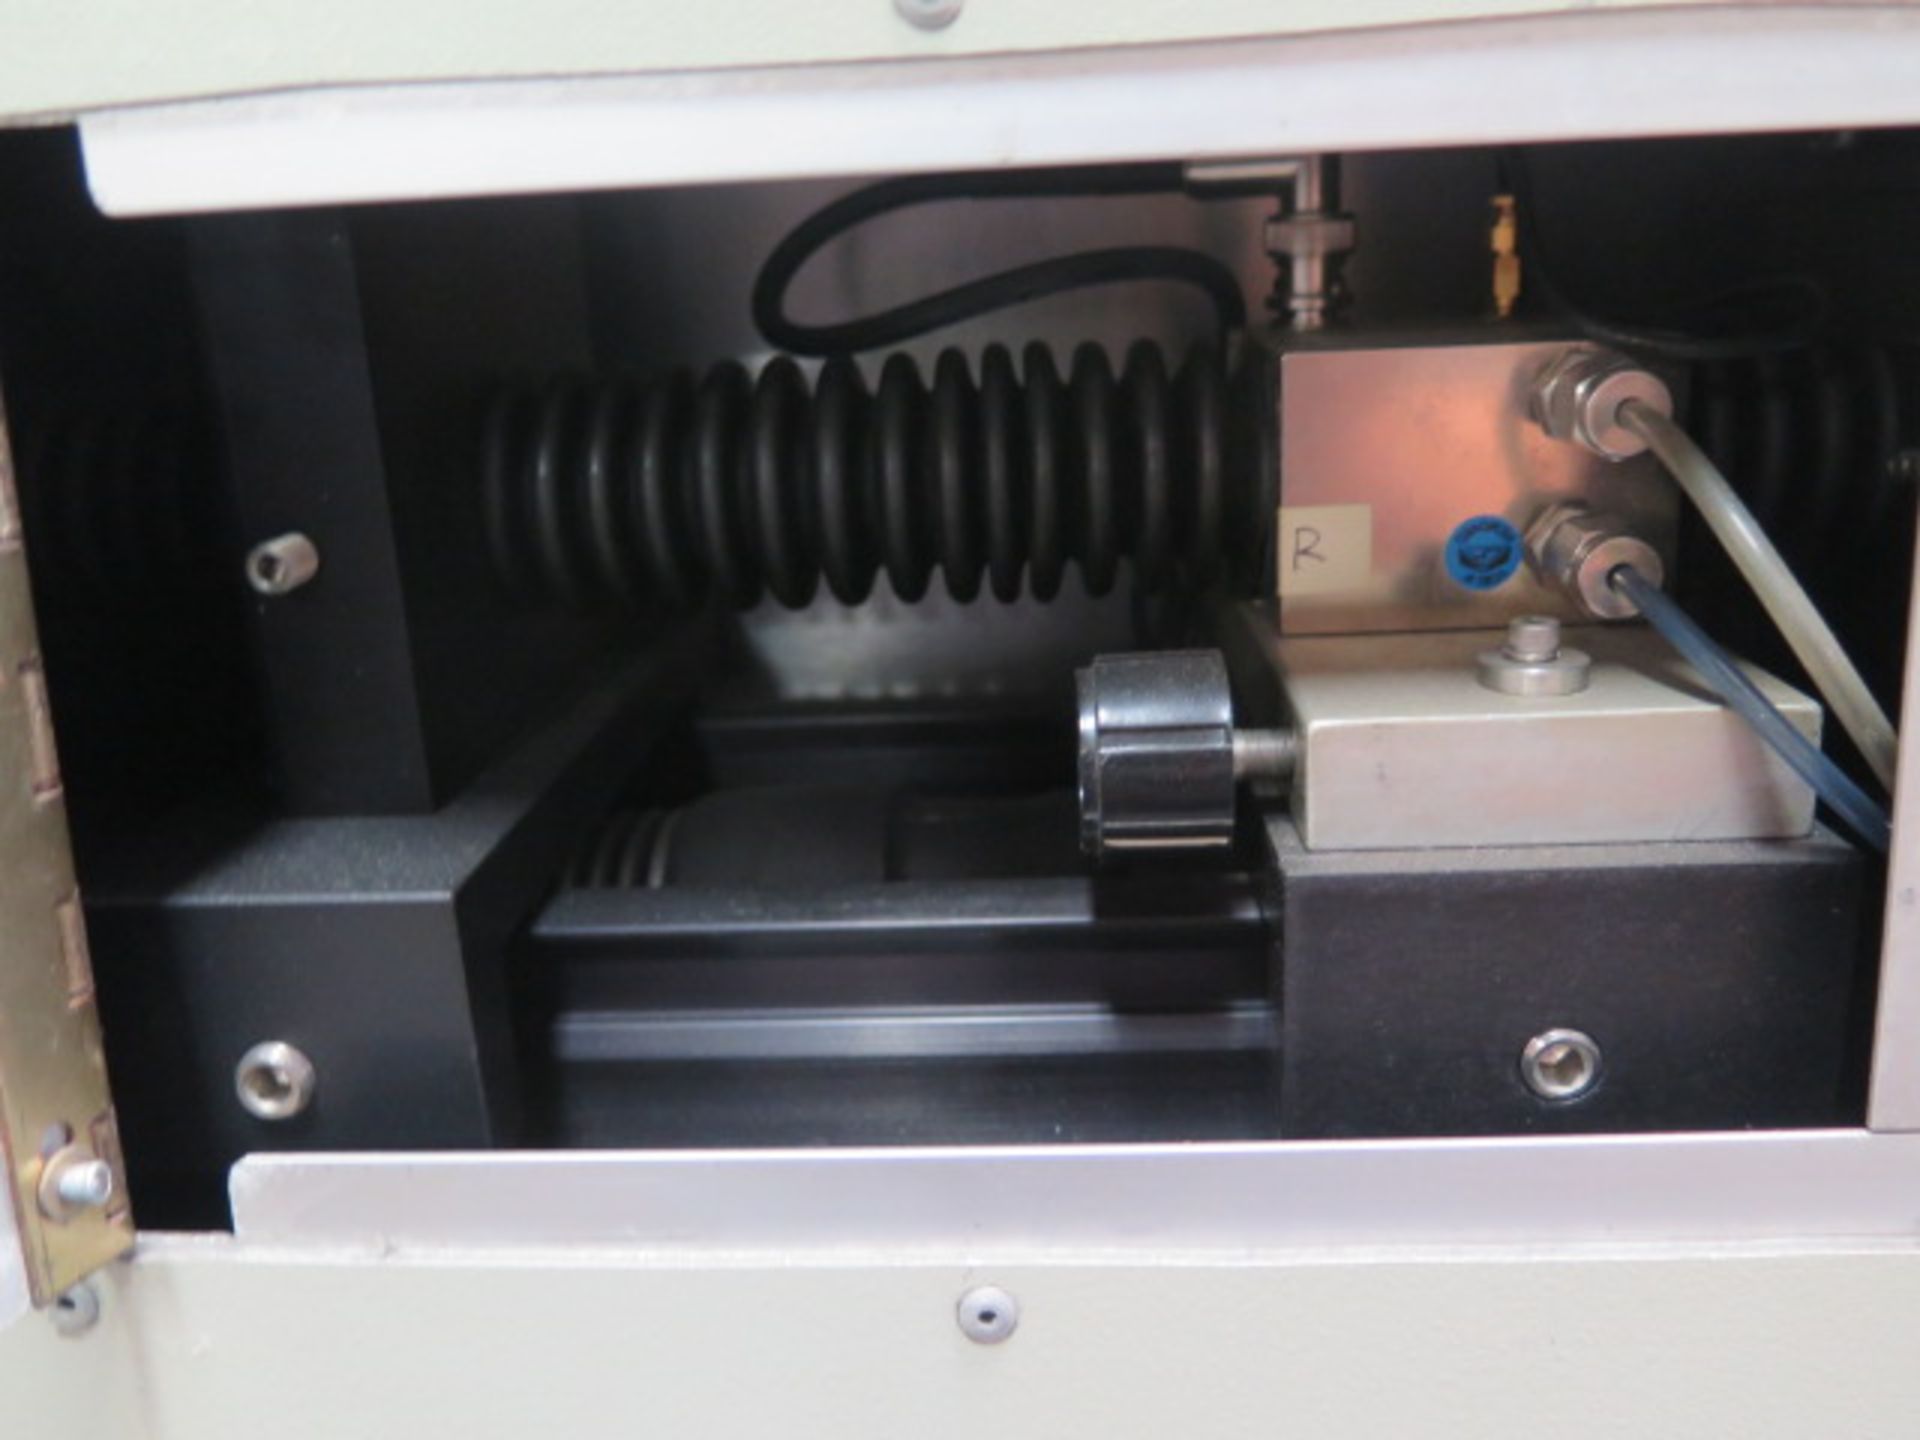 General Scanning Inc. “Hi-Mark” mdl. HM400 Laser Engraving System s/n 94490212 SOLD AS-IS - Image 5 of 11